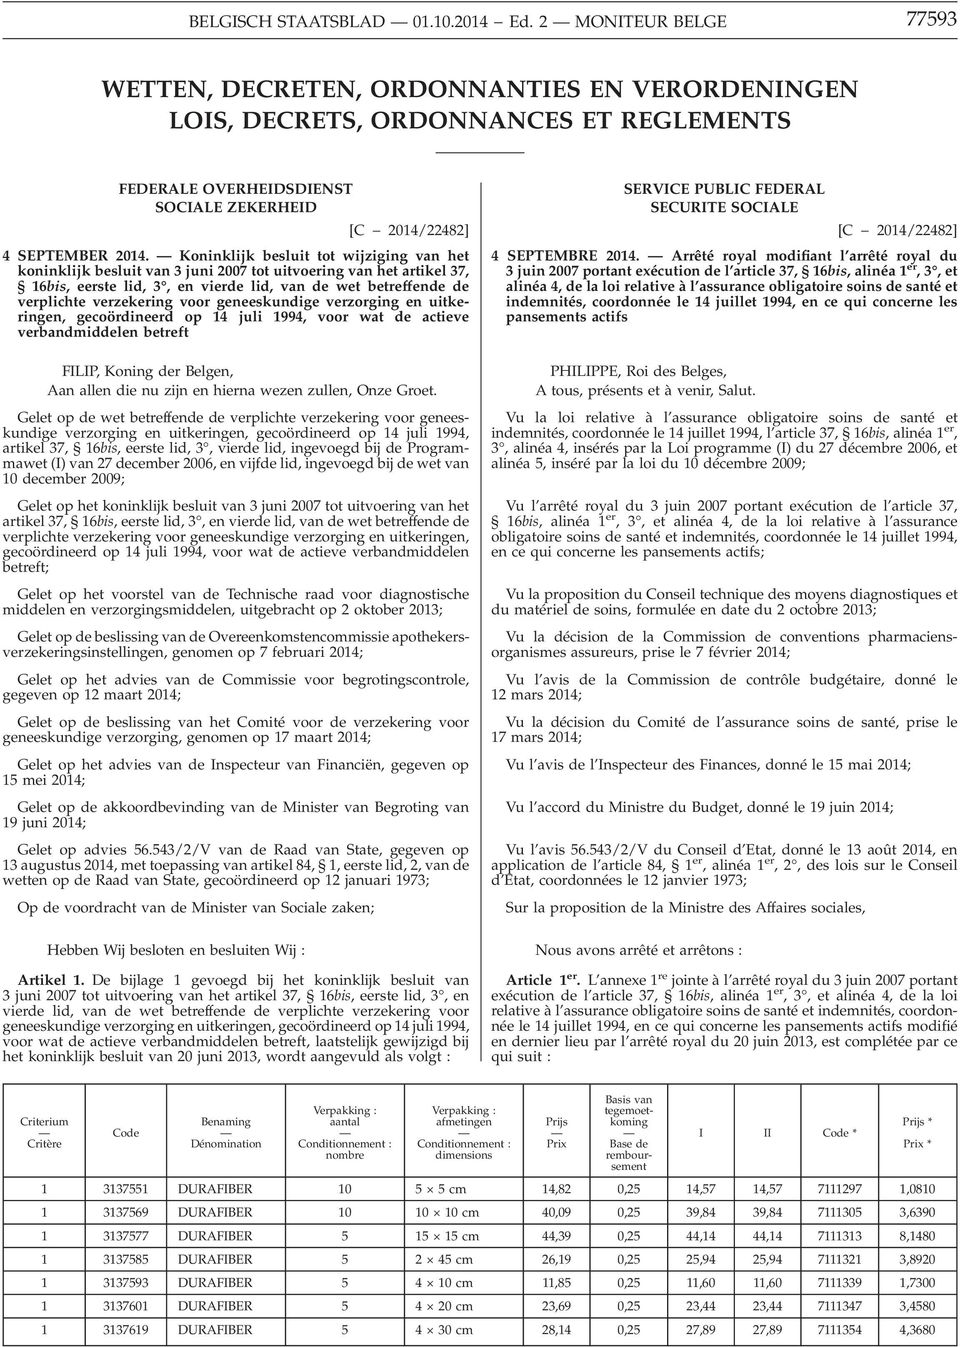 Koninklijk besluit tot wijziging van het koninklijk besluit van 3 juni 2007 tot uitvoering van het artikel 37, 16bis, eerste lid, 3, en vierde lid, van de wet betreffende de verplichte verzekering